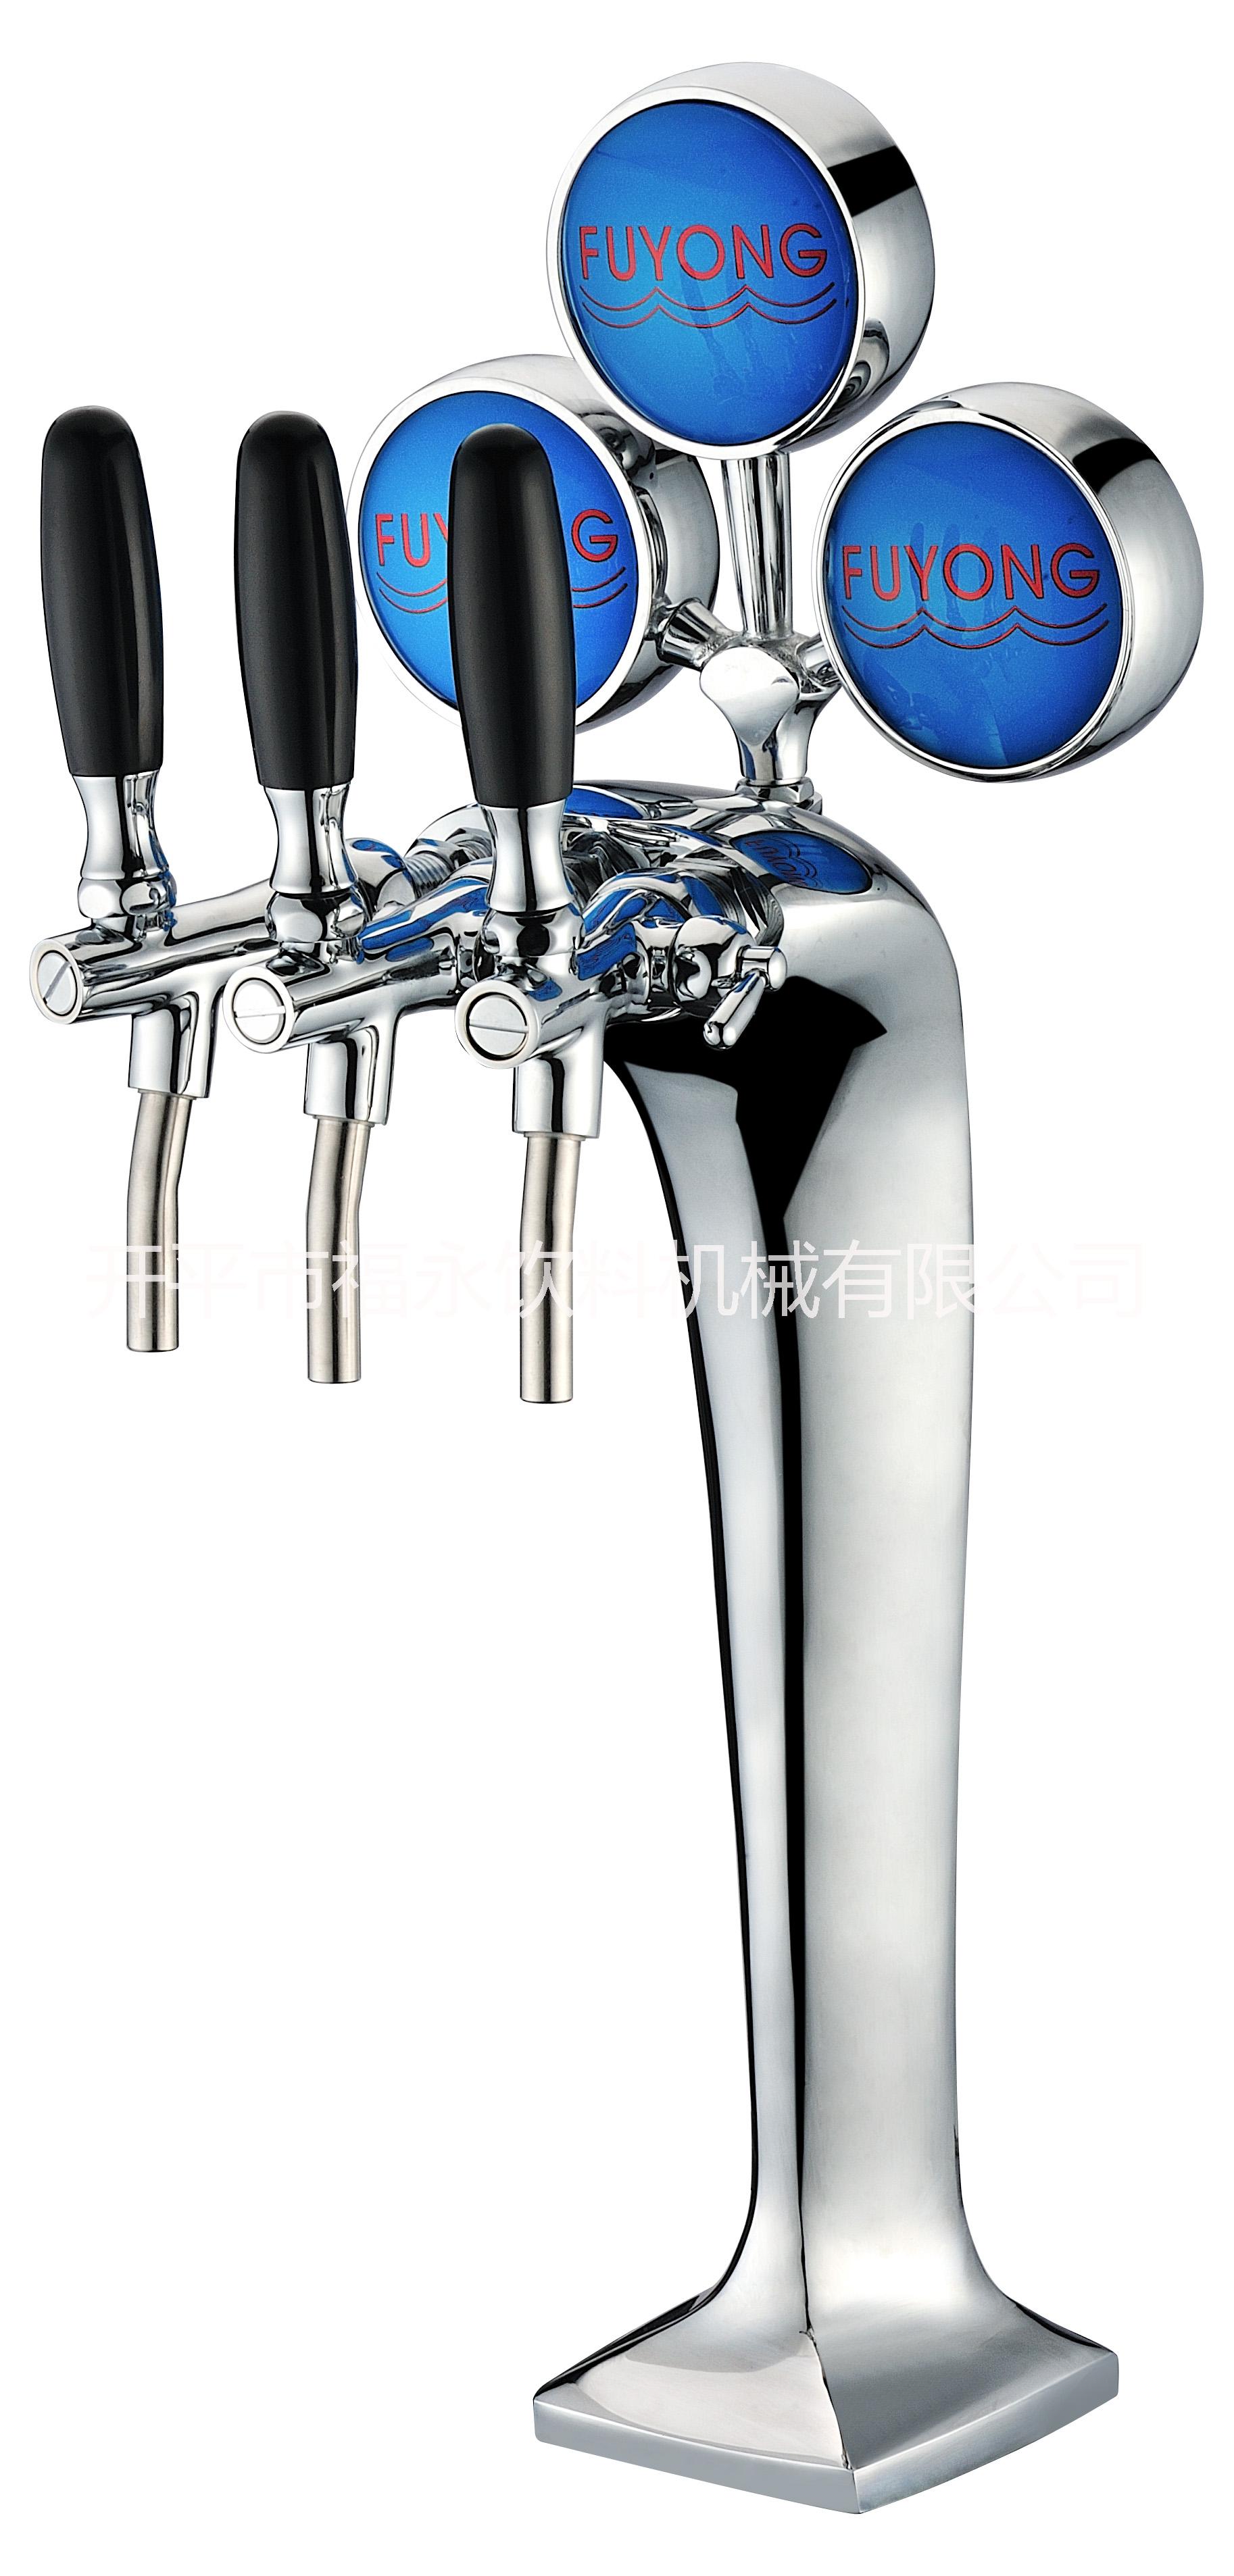 开平福永 扎啤专用 三头蛇形酒柱 酒塔 啤酒机 啤酒设备图片